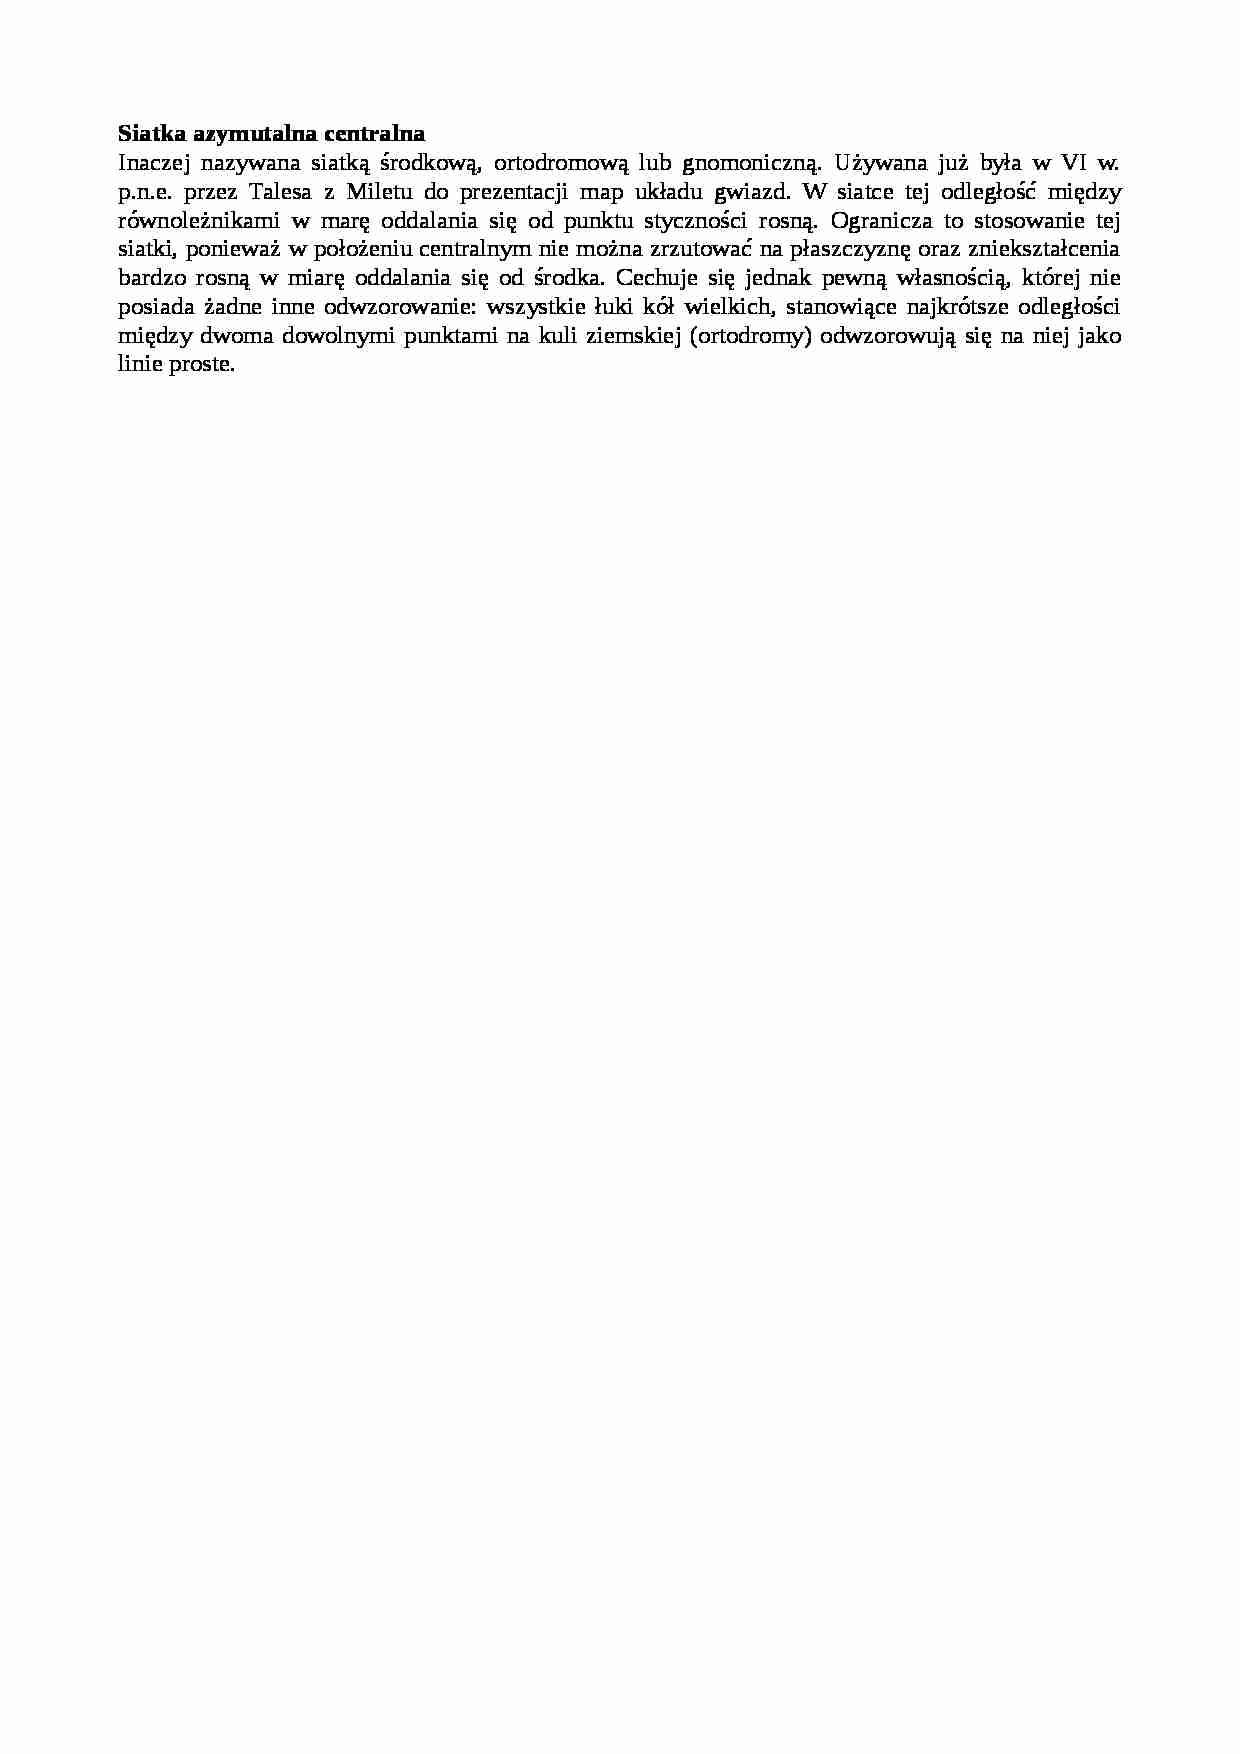 Siatka azymutalna centralna-opracowanie - strona 1